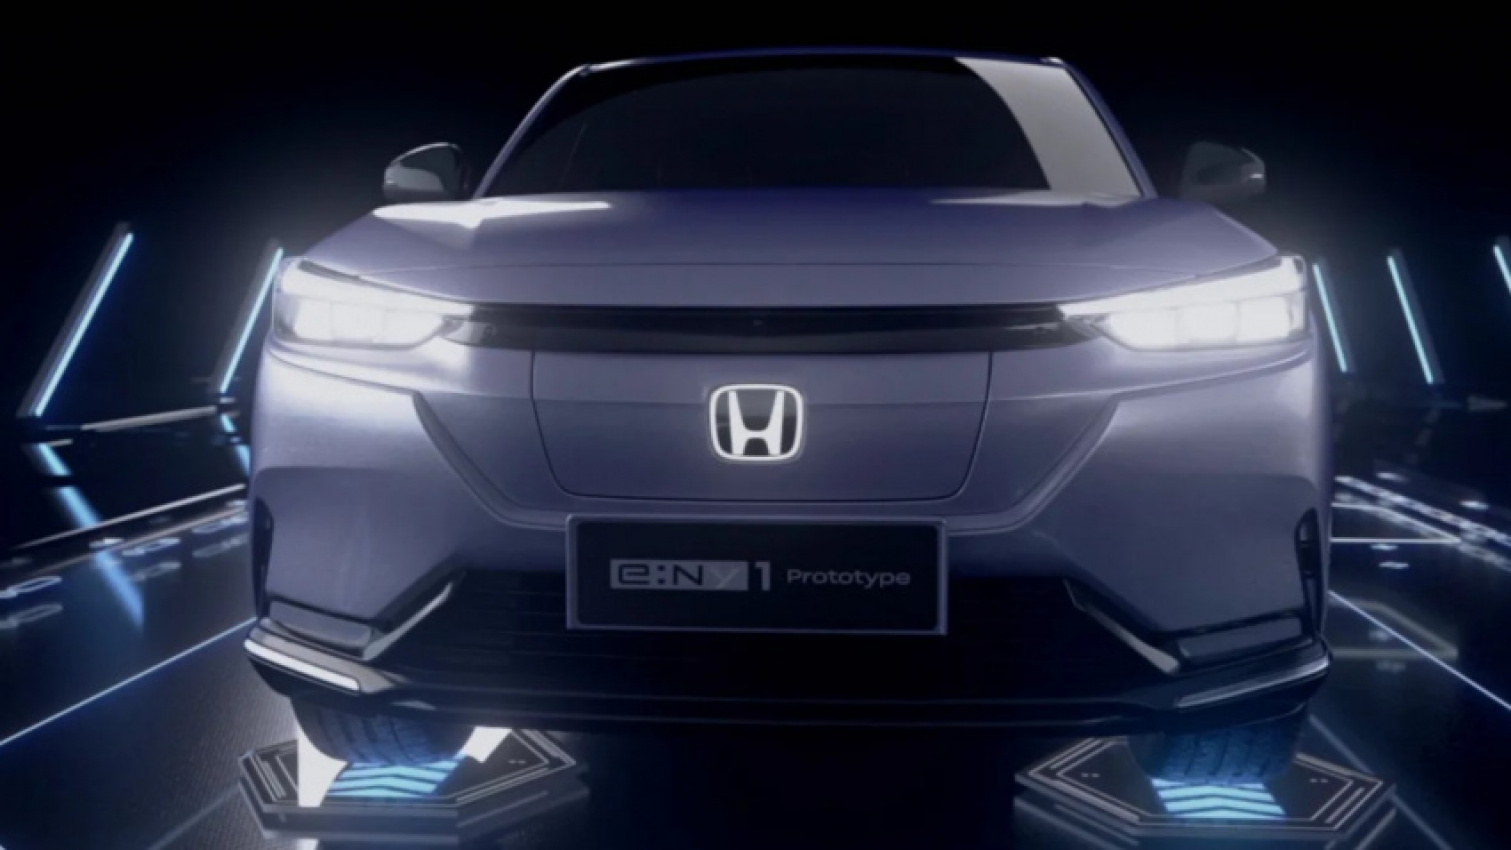 autos, cars, electric, honda, news, electric suvs, honda e:ny1, honda e:ny1 prototype revealed as new electric suv